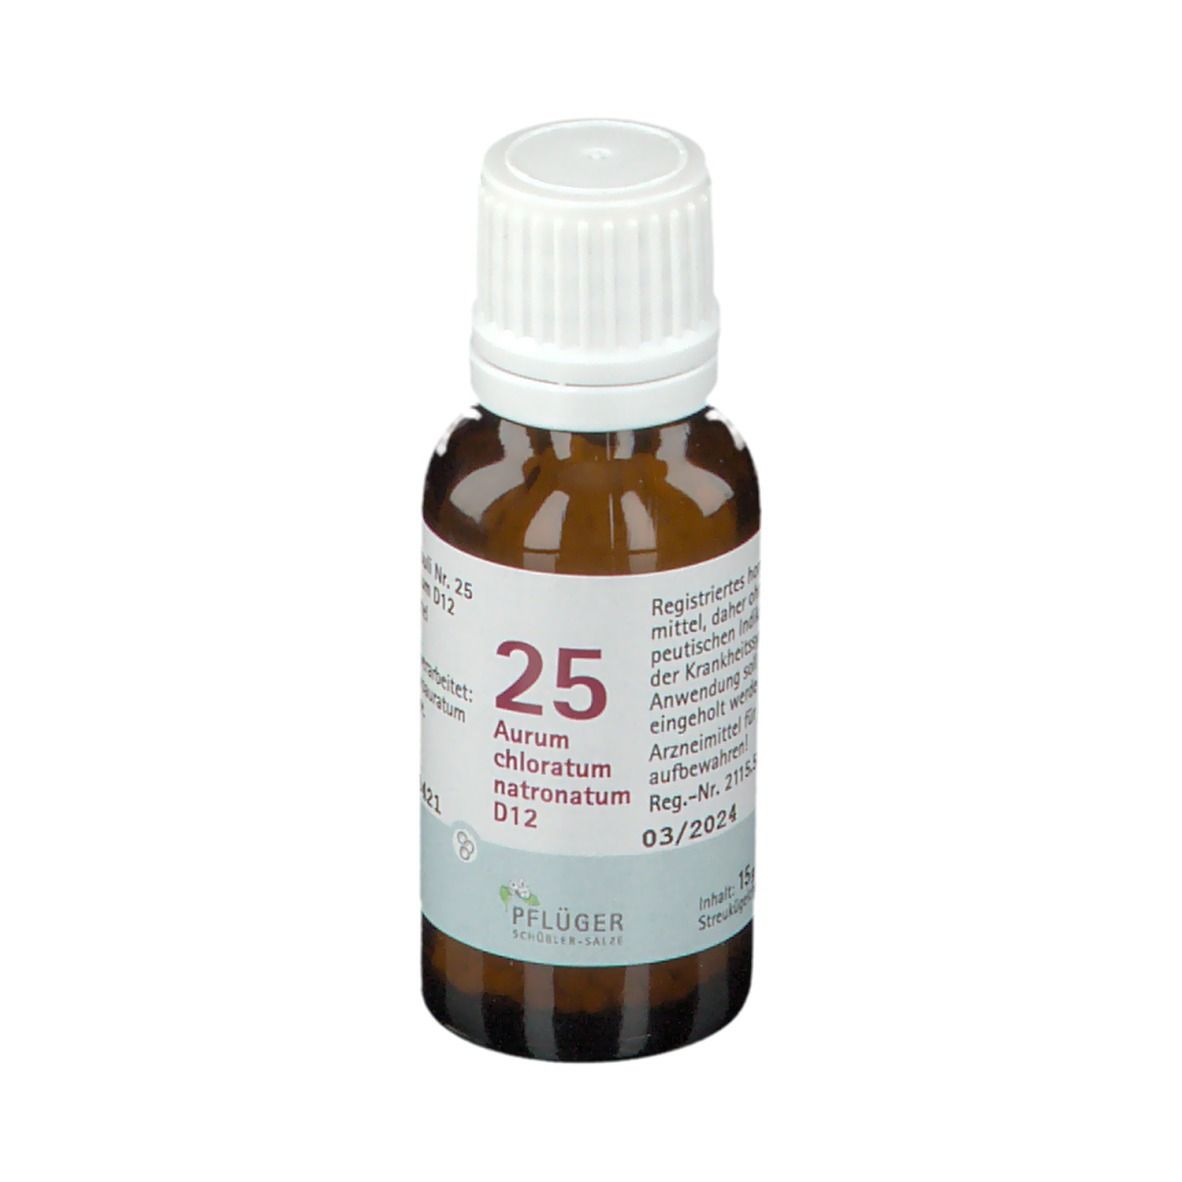 BIOCHEMIE PFLÜGER® Nr. 25 Aurum chloratum natronatum D12